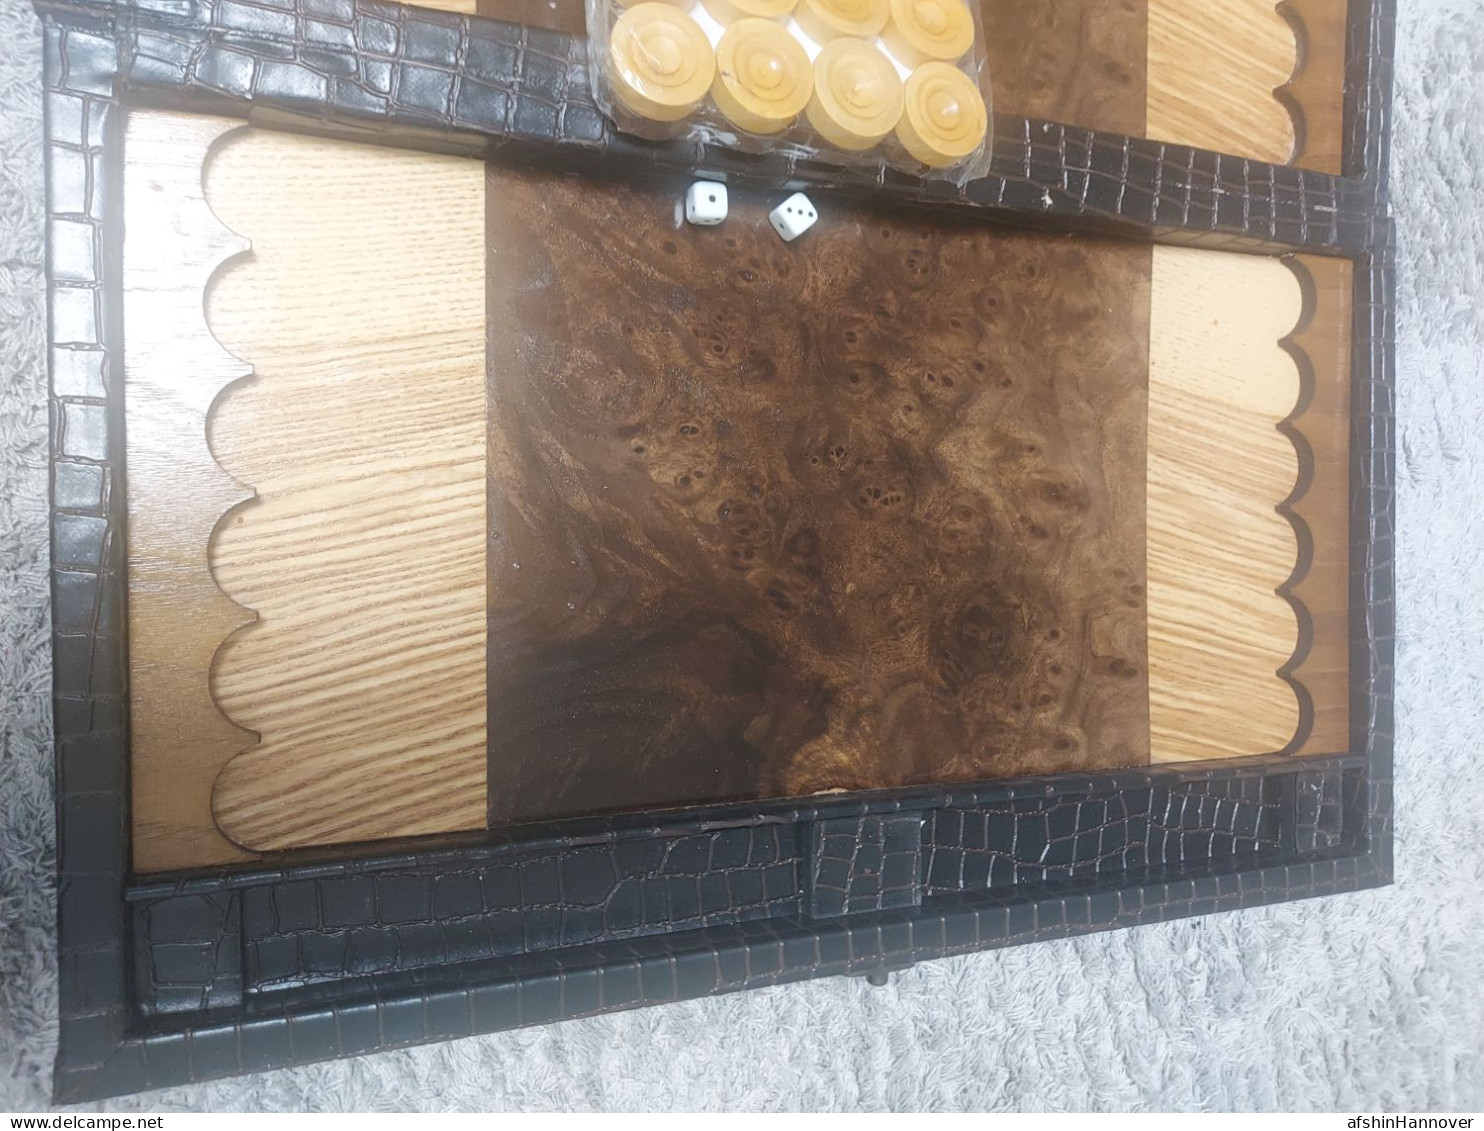 Iran Persian تخته نرد  با جلد چرم مصنوعی  ساخت ایران  backgammon board with artificial leather cover made in Iran